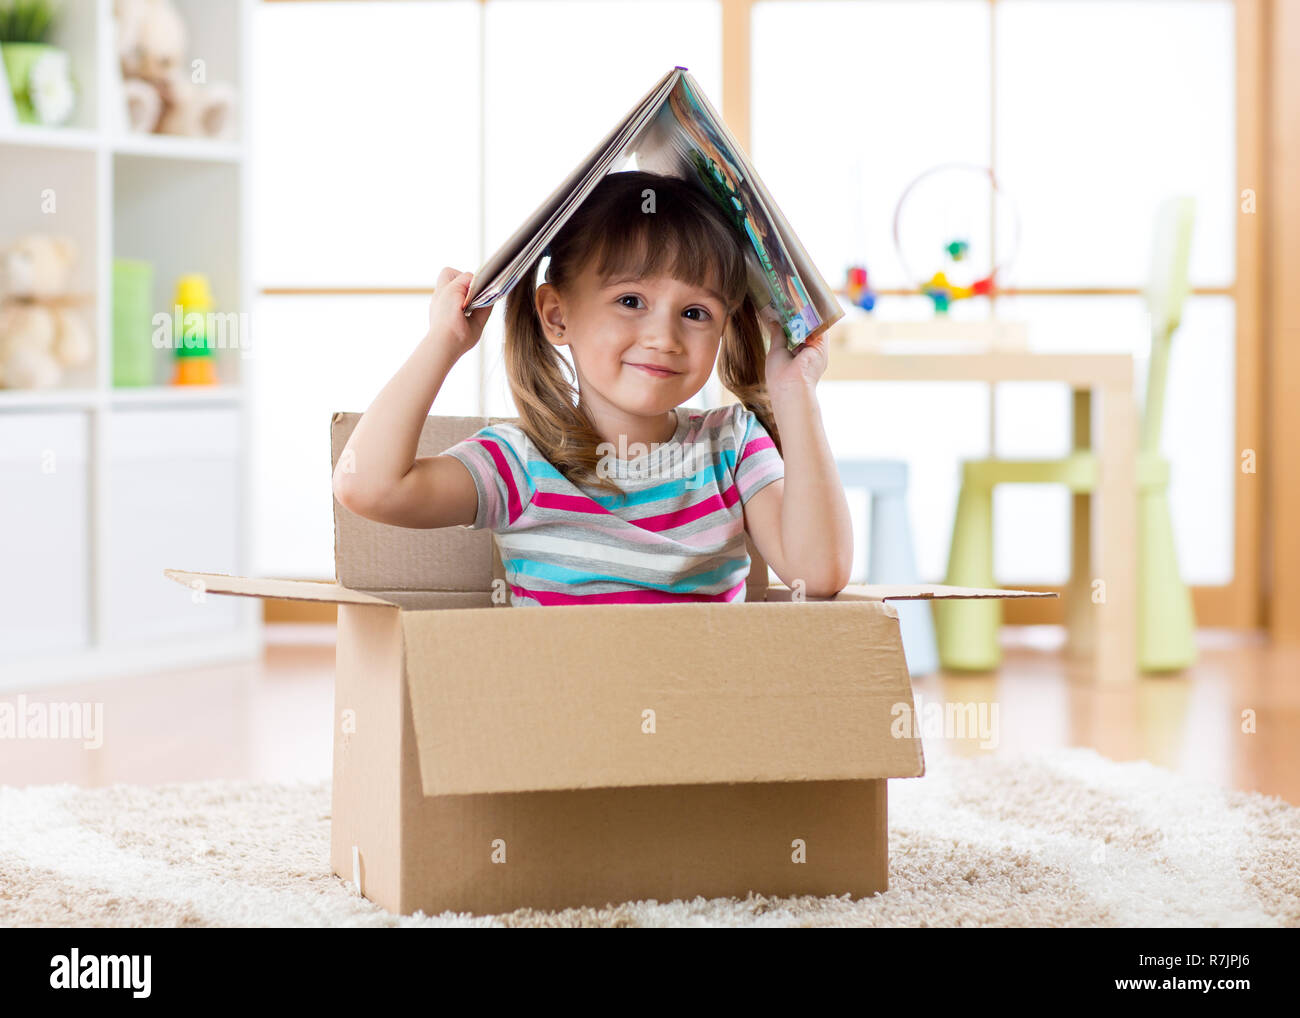 Smart kid ragazza seduta in una scatola di cartone e in possesso di un libro sopra la testa come tetto Foto Stock